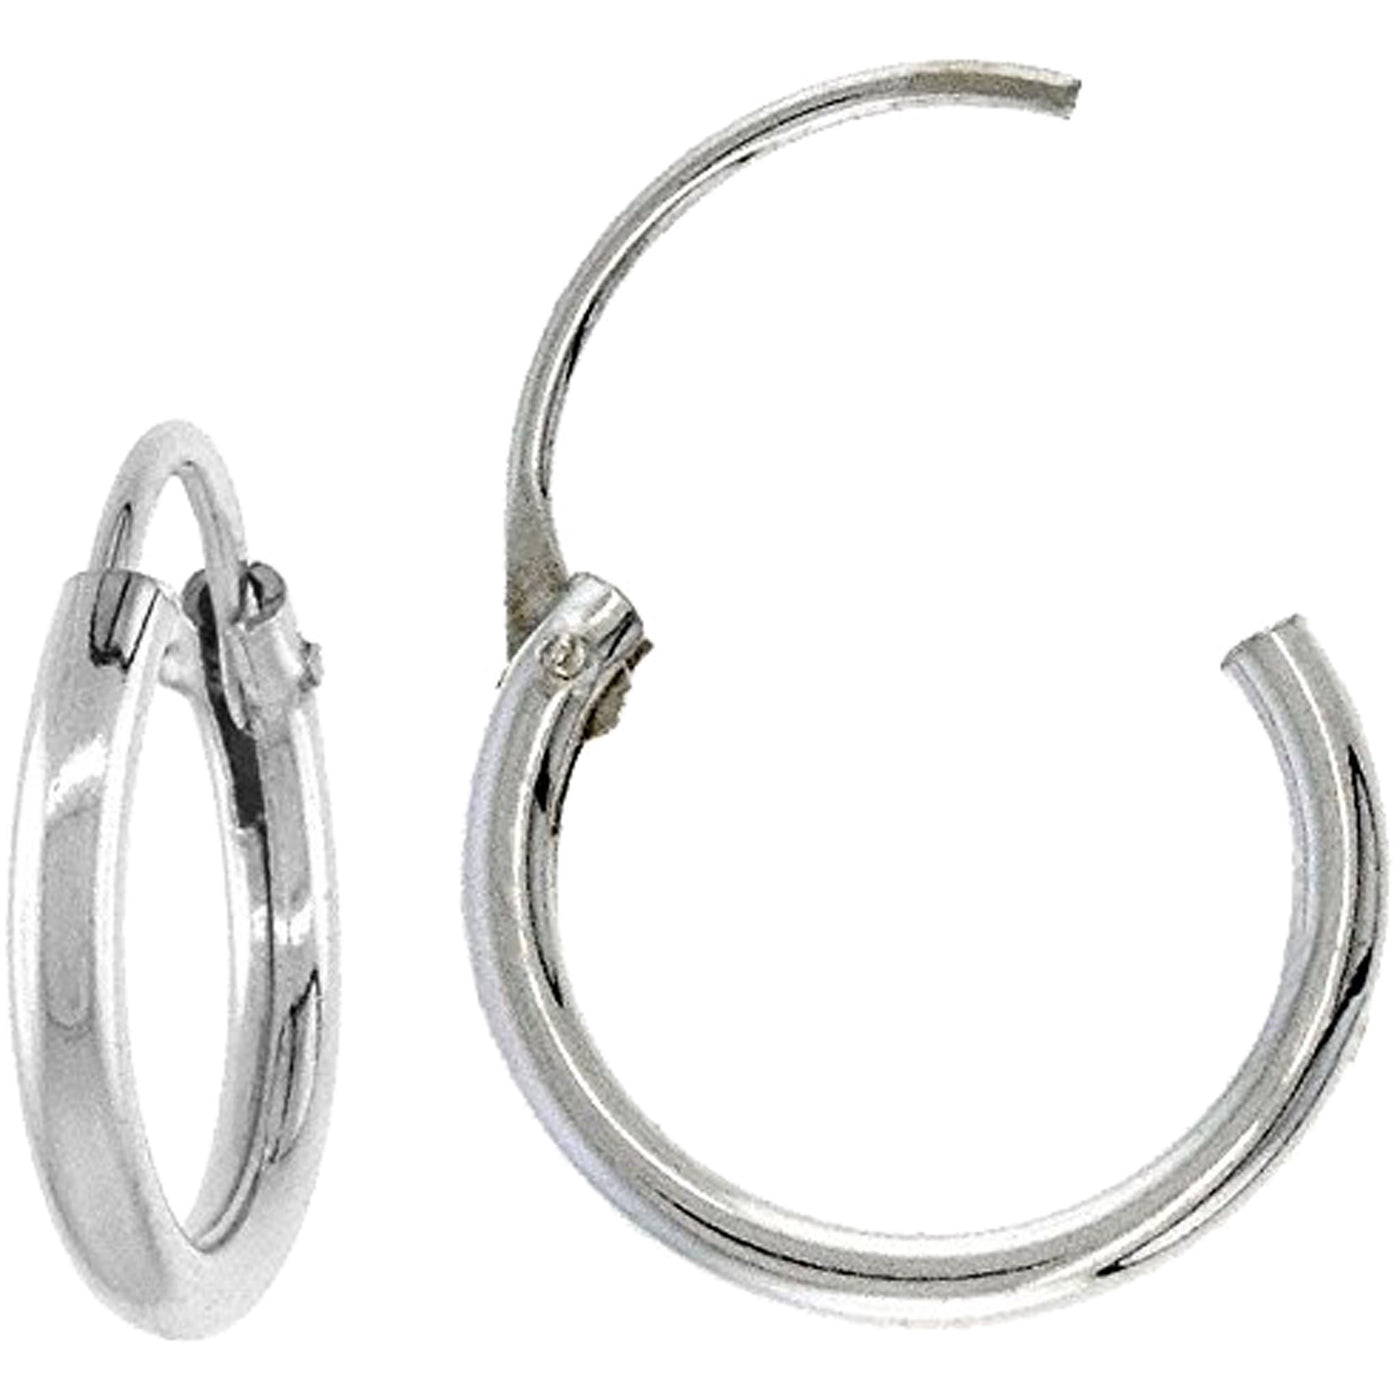 Steel ring earrings 12mm